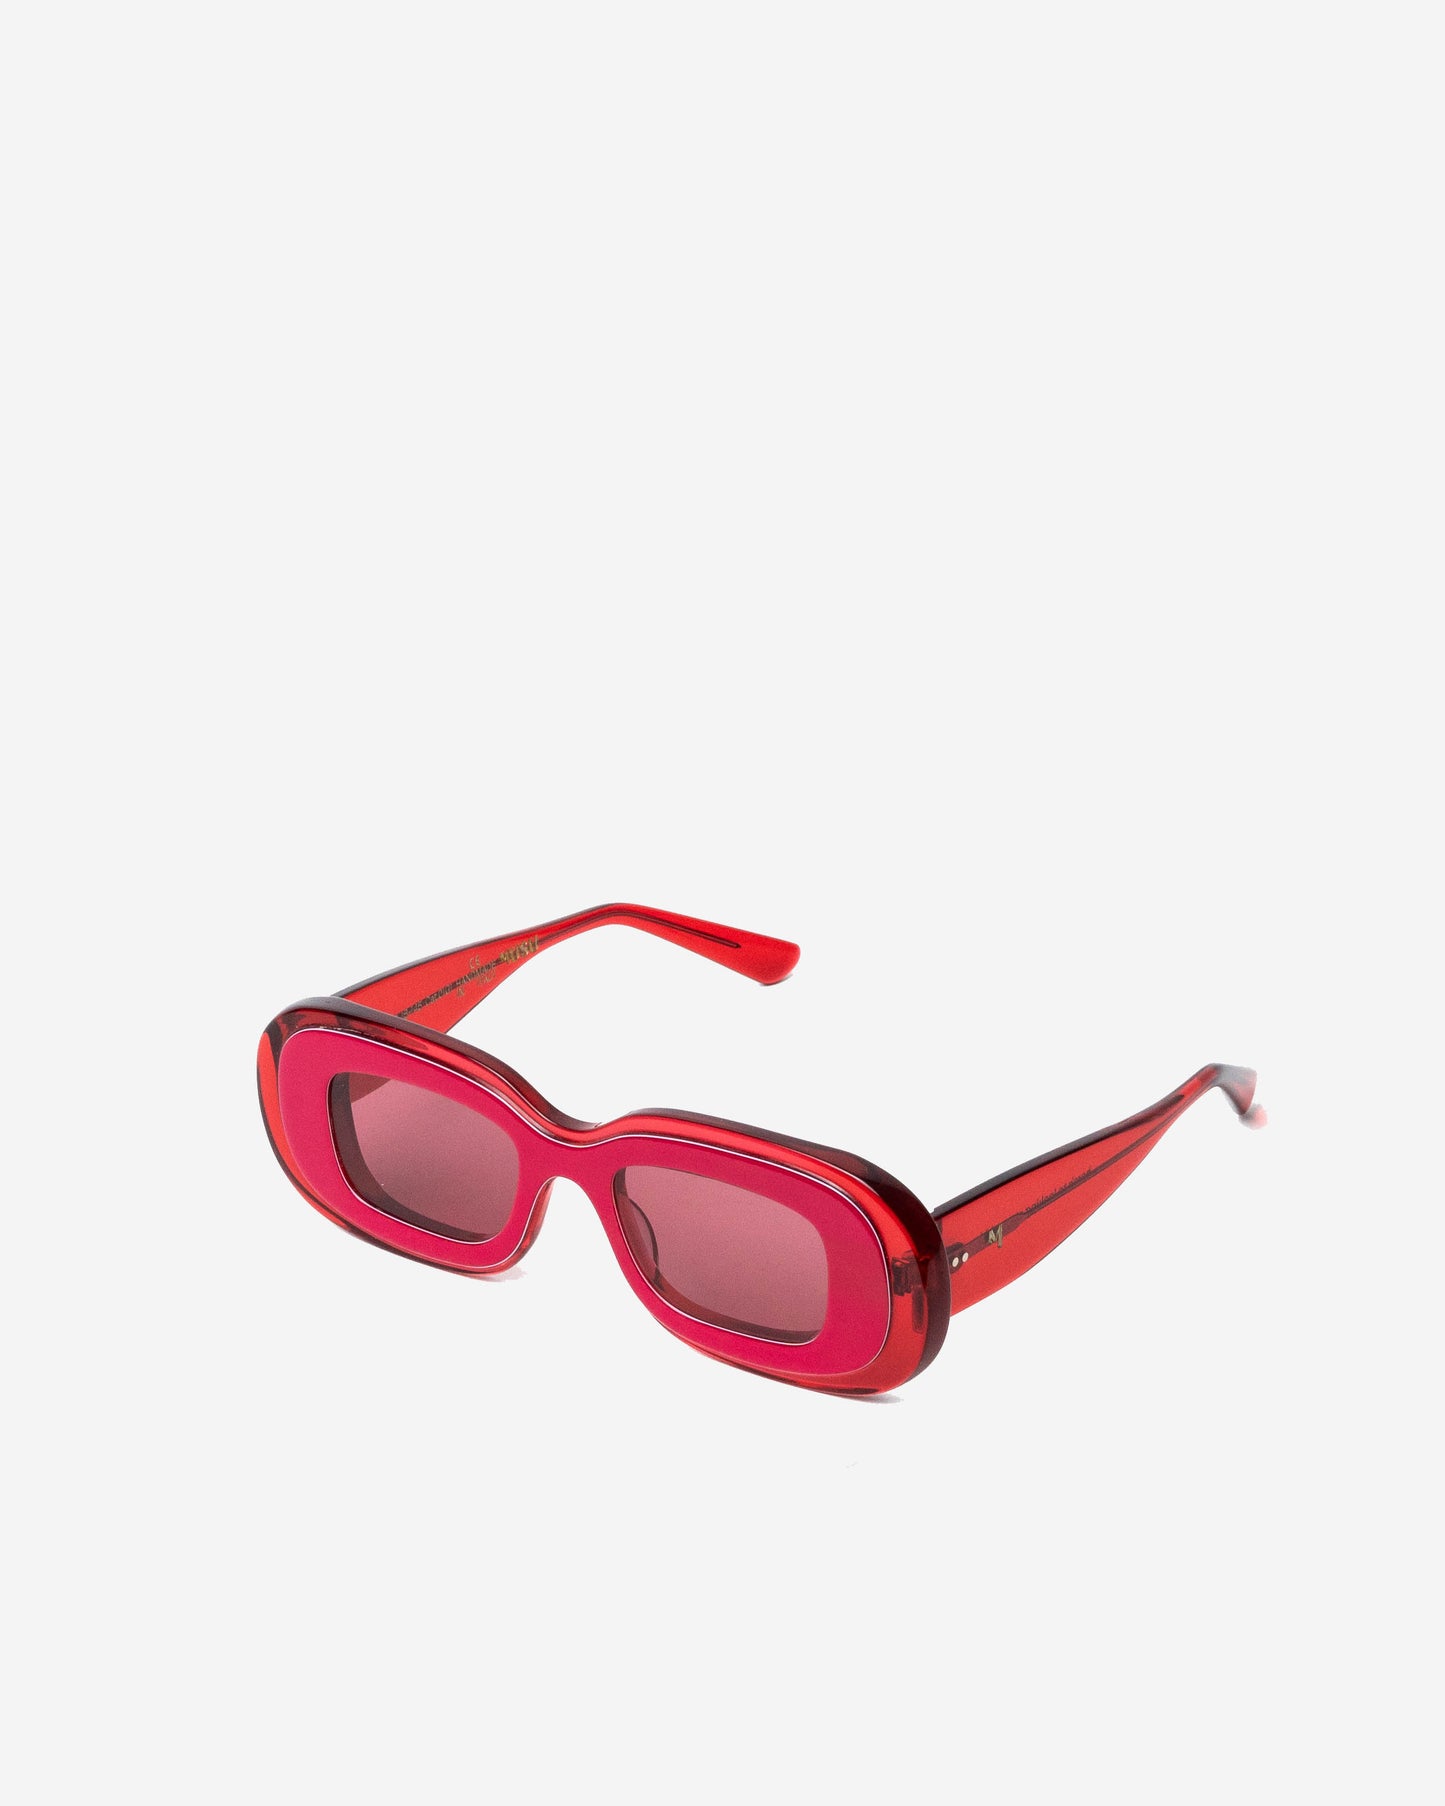 Vision Redwood Oval luxury sunglasses